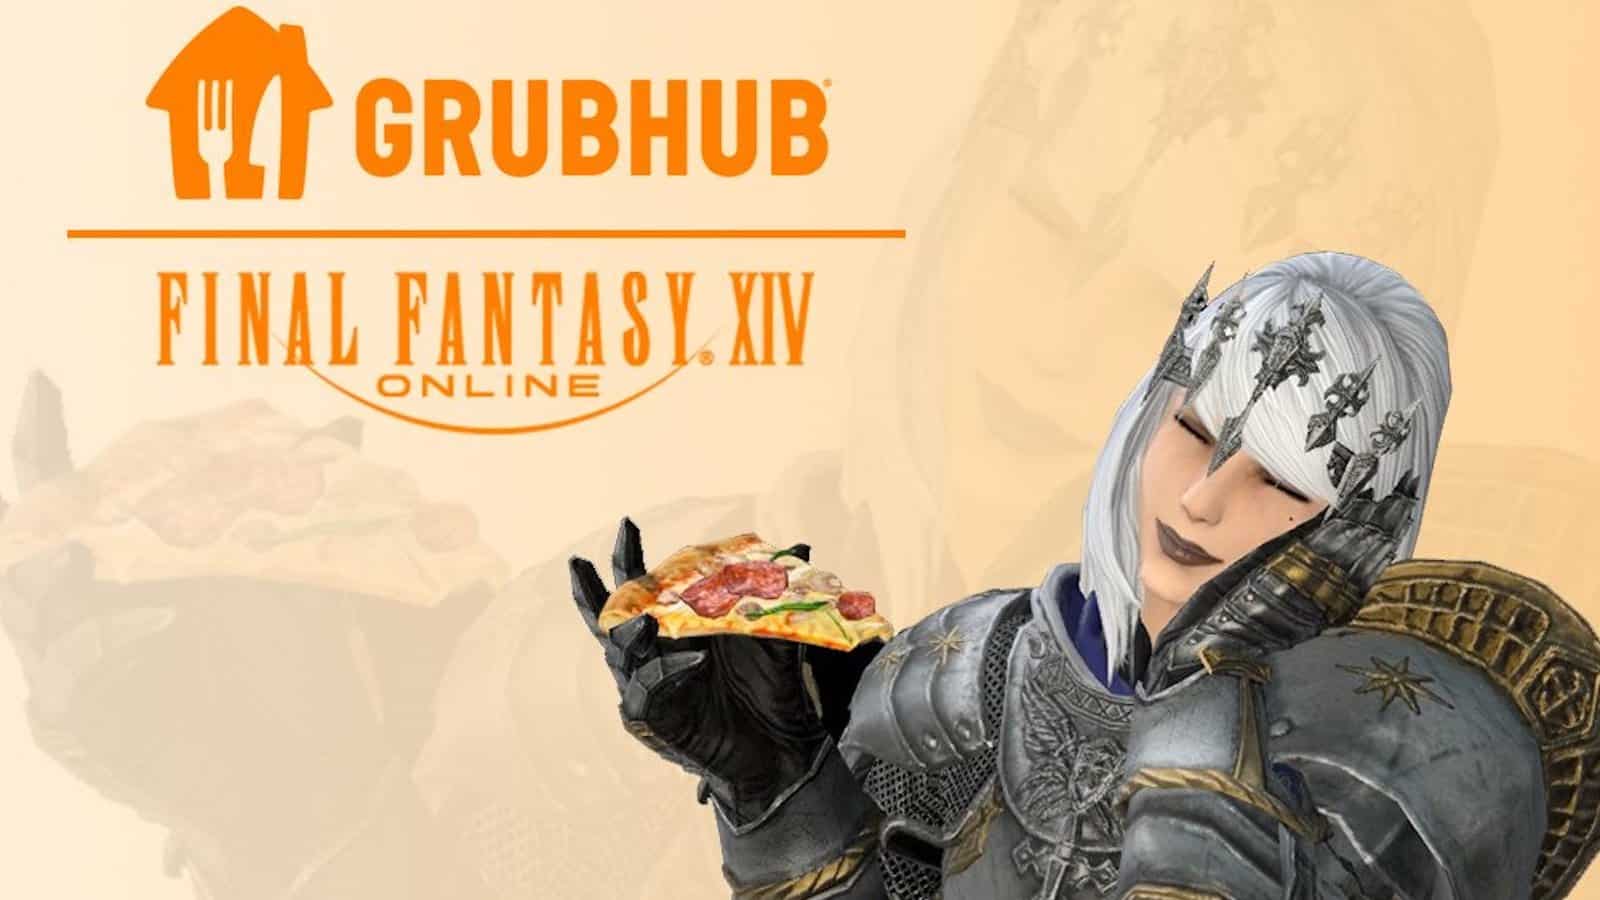 ffxiv Grubhub-Charakter mit Pizza-Emote